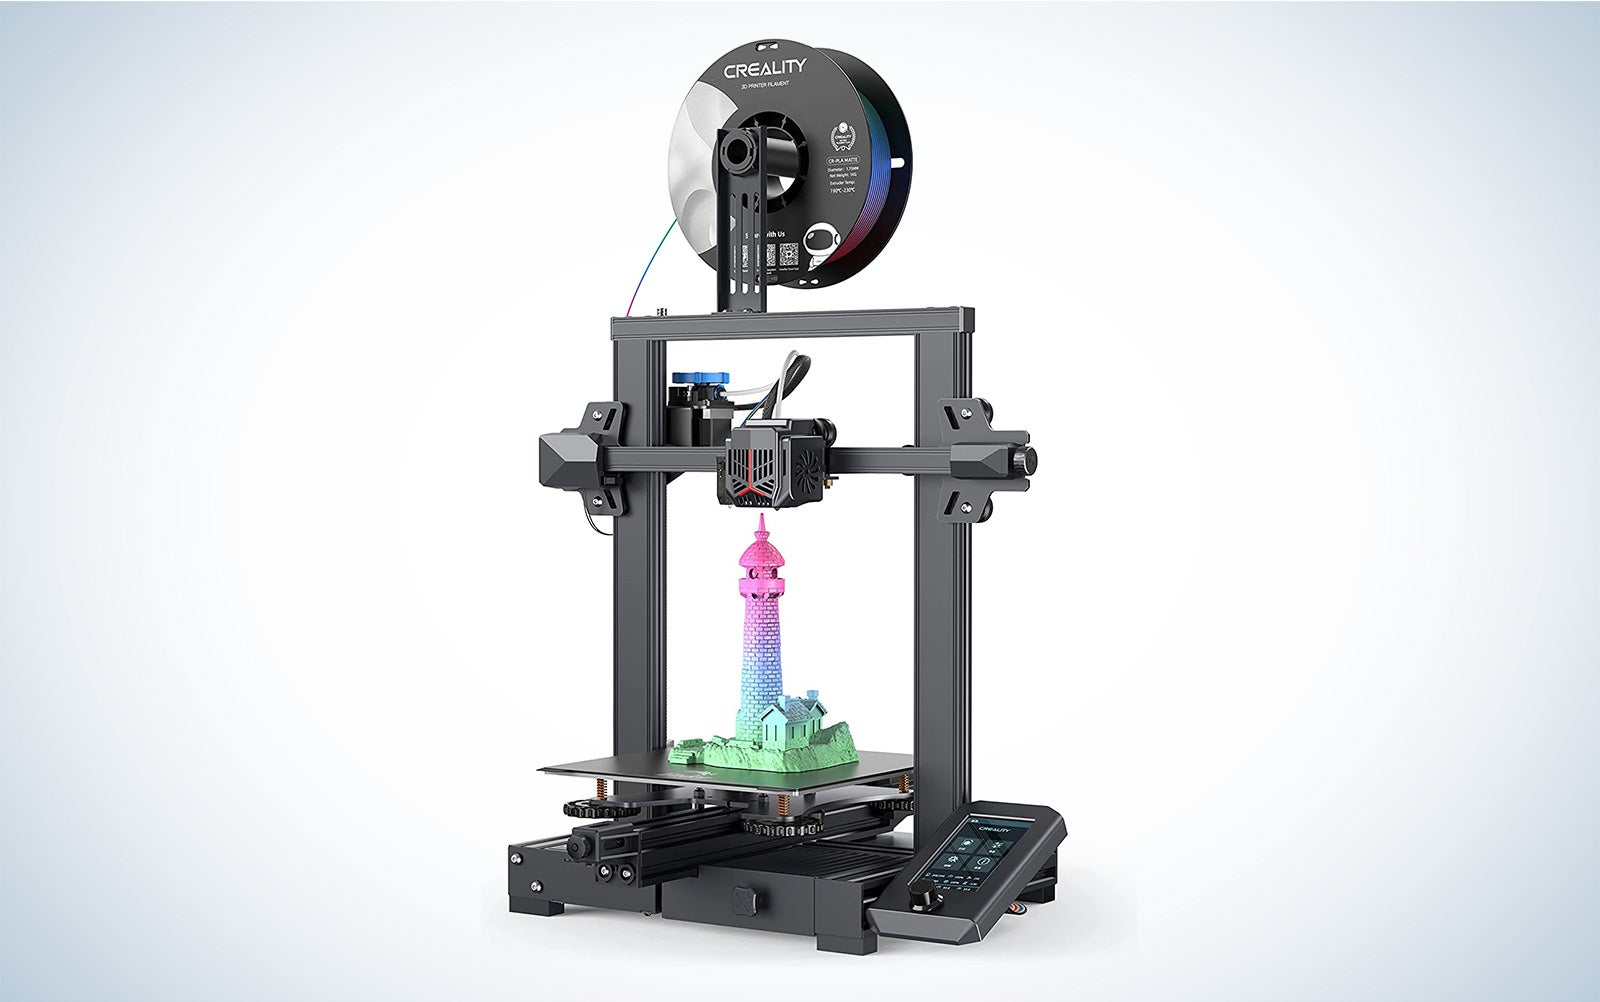 Creality Ender 3 V2 neo 3D printer